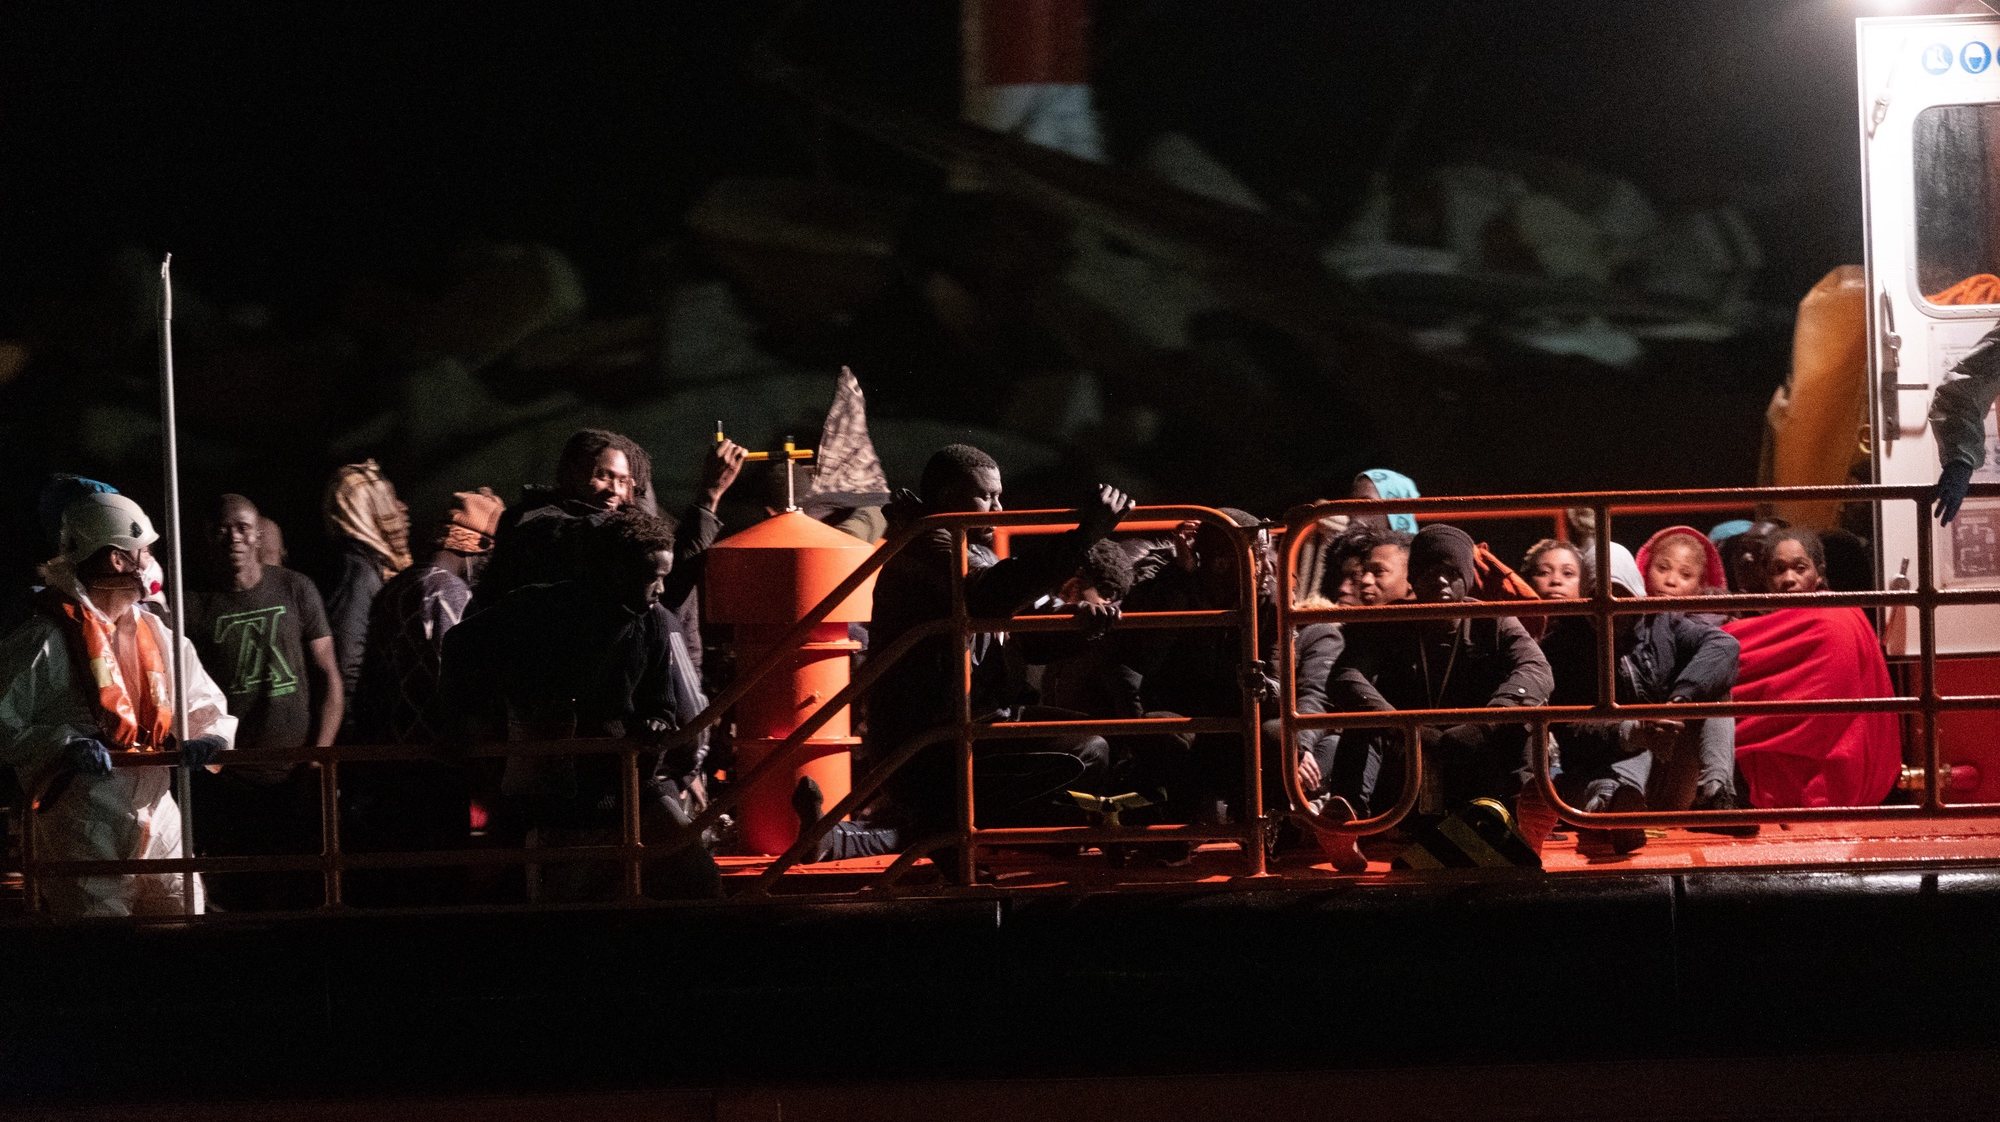 60 migrantes resgatados de navio em Fuerteventura, ao largo das ilhas Canárias